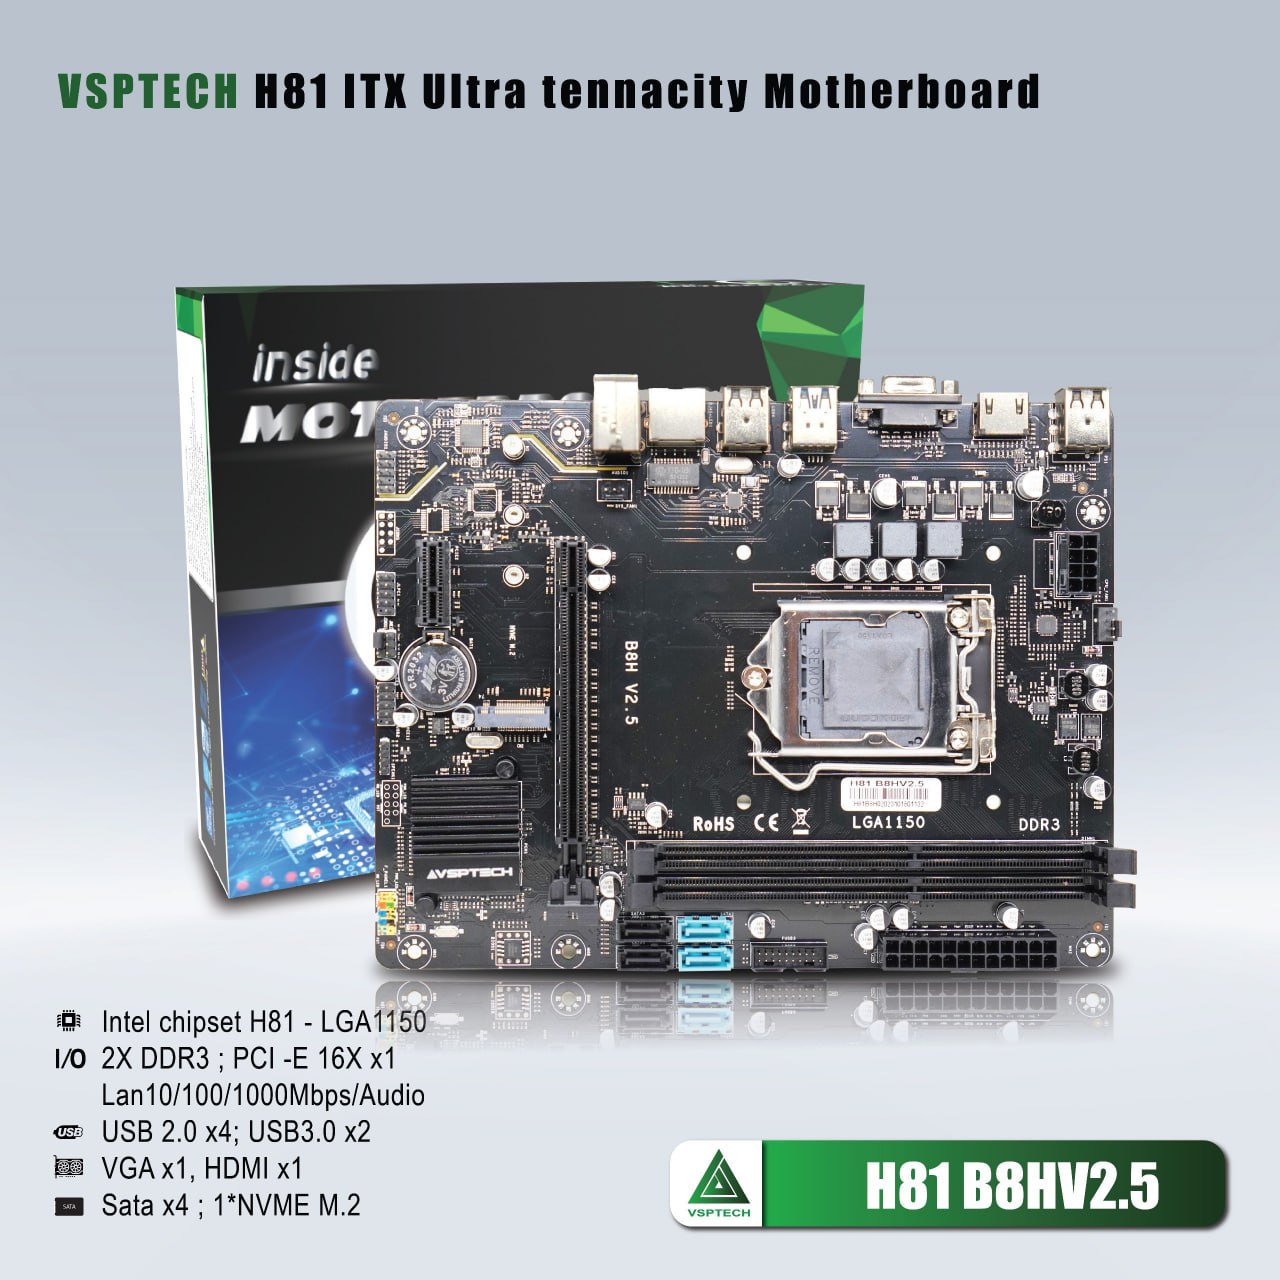 Mainboard SK 1150 VSPTECH H81 B8H V2.5 Chính hãng (VGA, HDMI, LAN 1000Mbps, 2 khe RAM DDR3, M2 NVMe, mATX) + Tặng Headphone HS-09